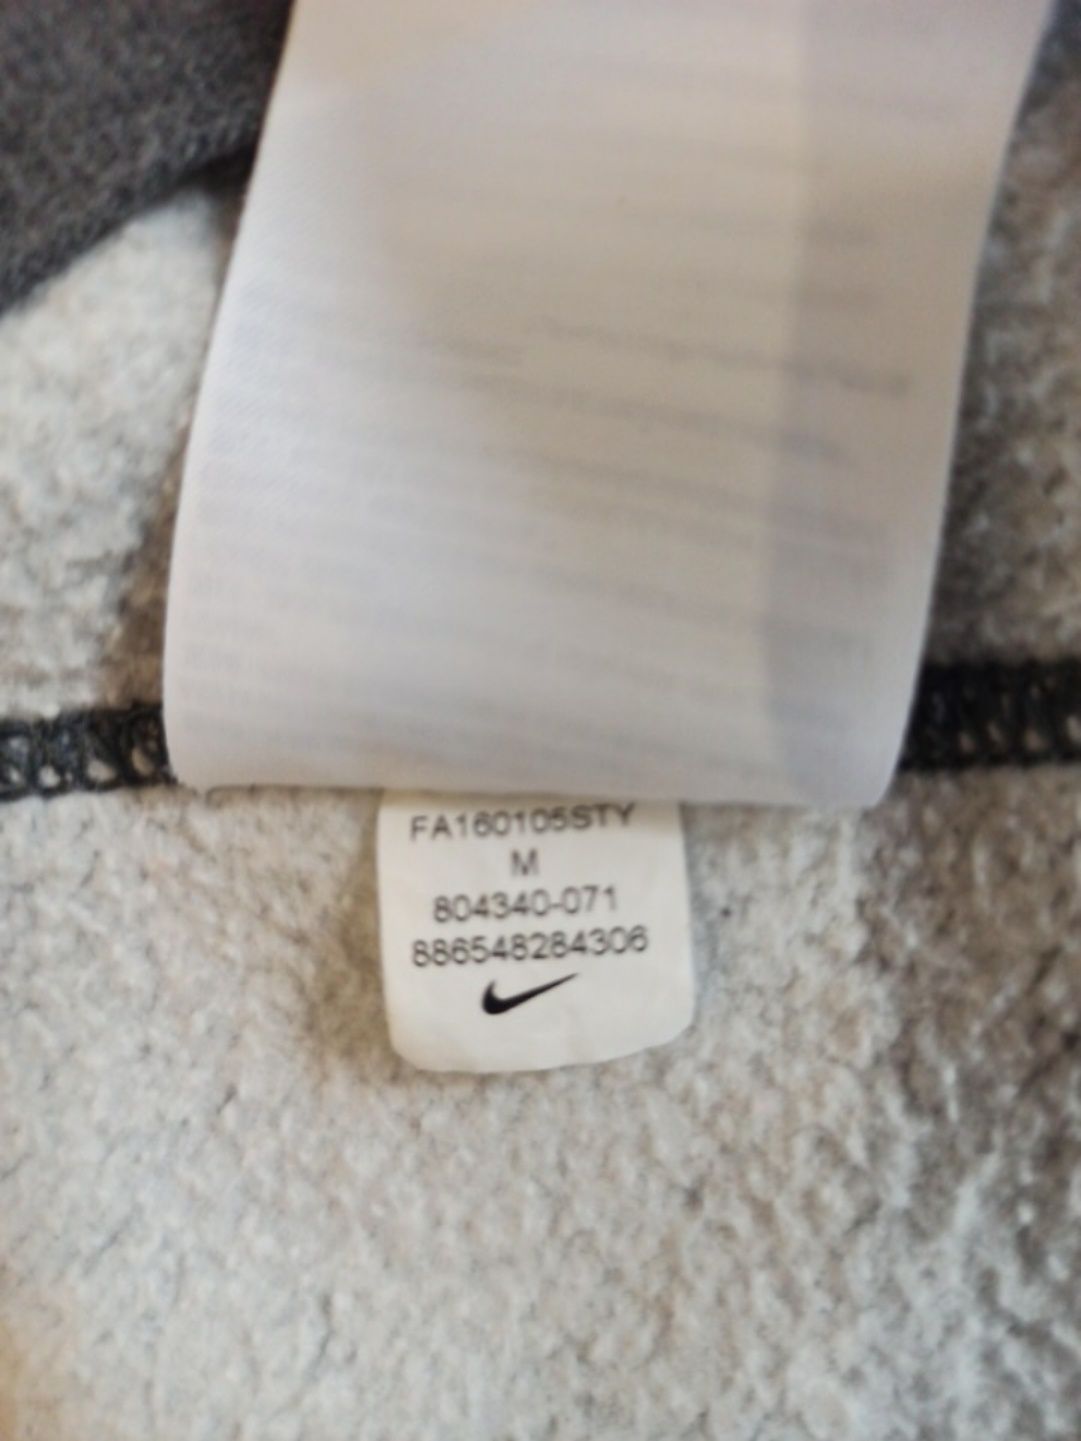 Світшот Nike оригінал
Стан нового
Розмір М,підійде на L
Плечі 46
Груди